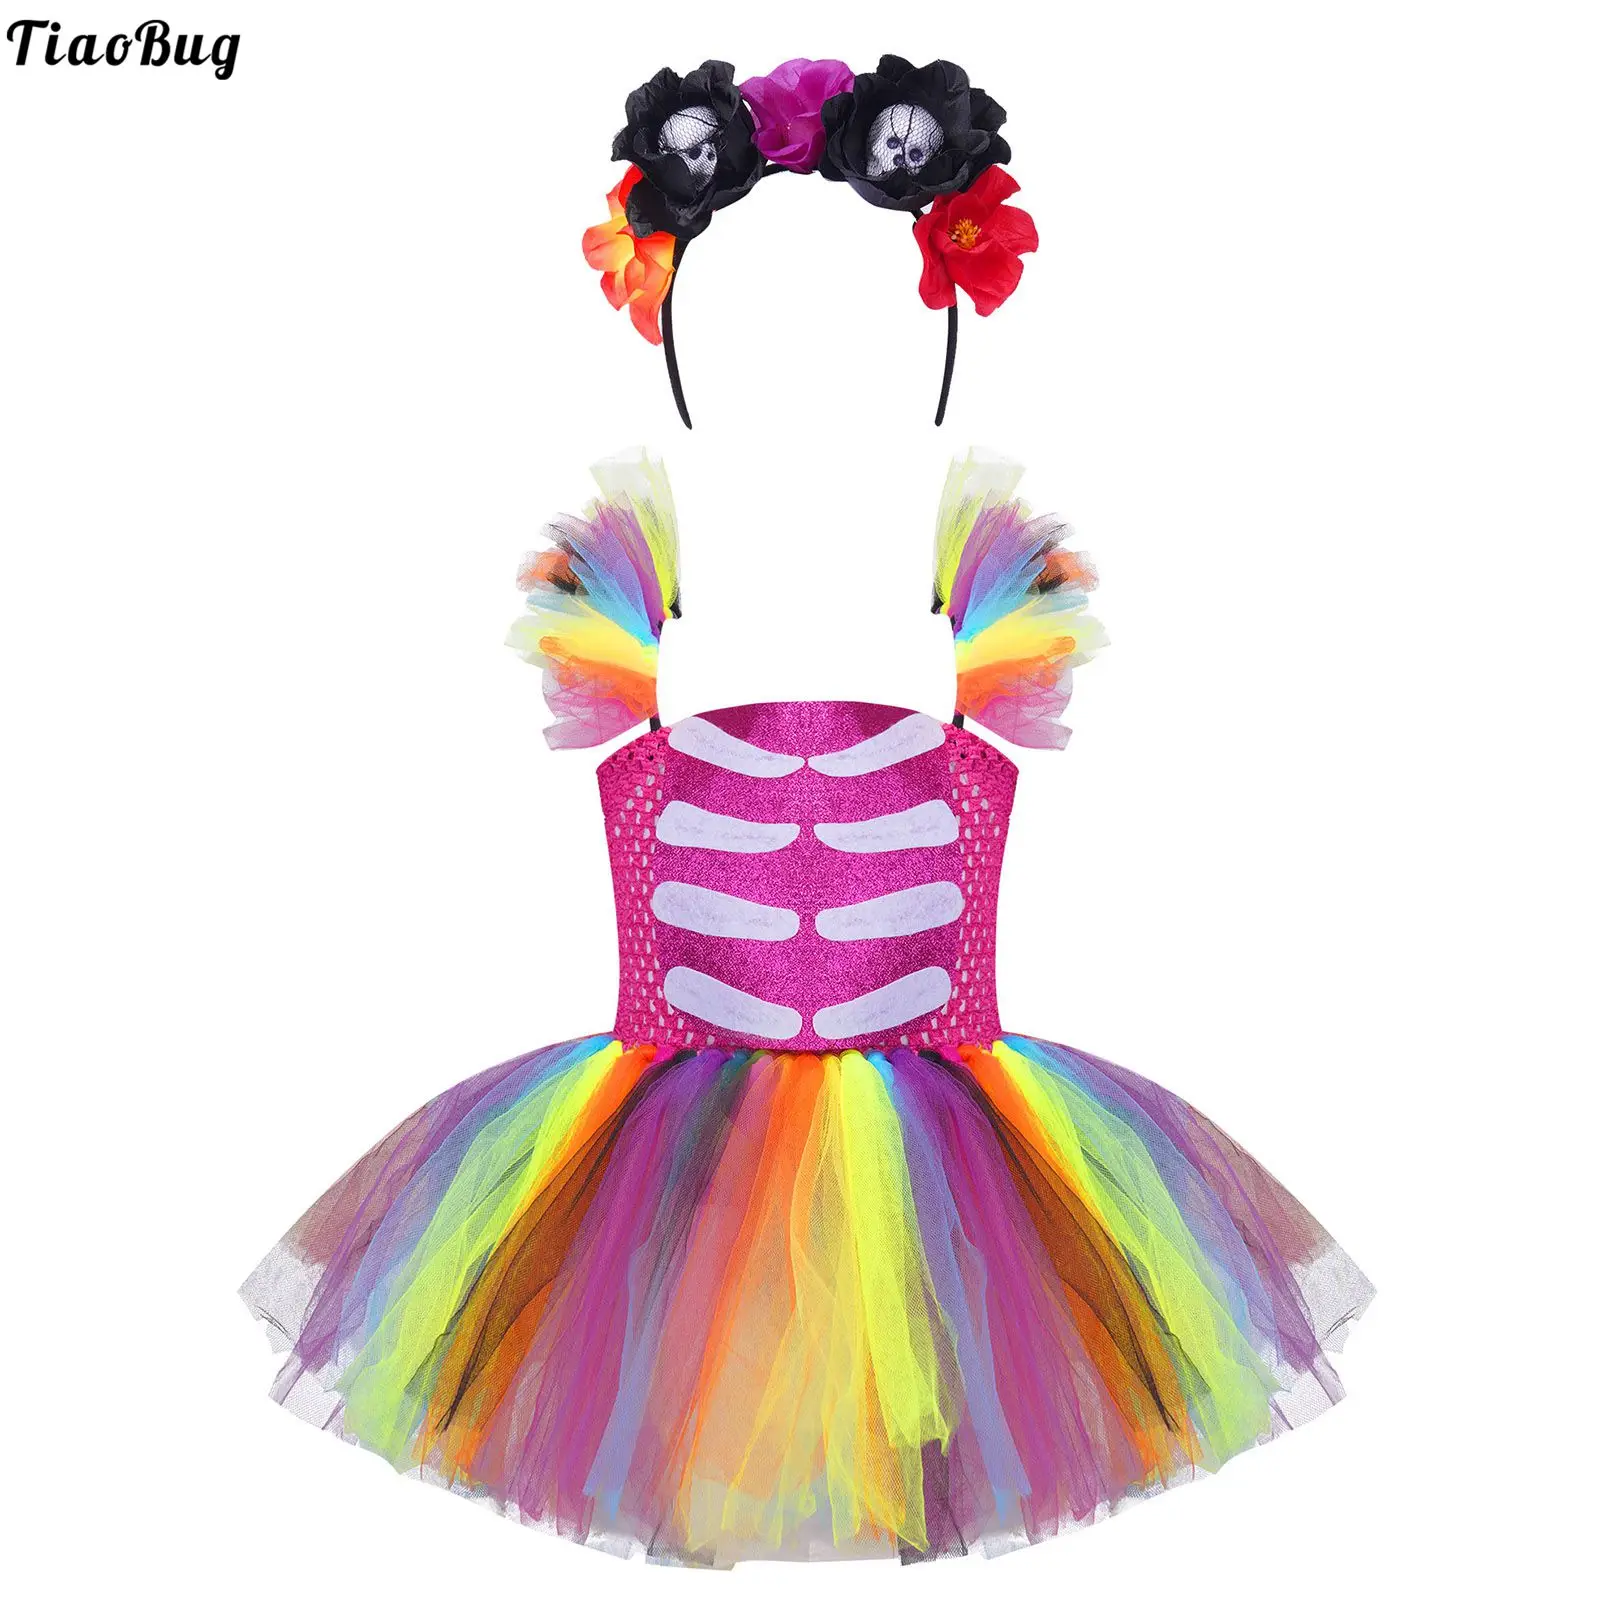 

Детские костюмы TiaoBug для косплевечерние на Хэллоуин для девочек, карнавальные костюмы, ремешки, аппликация в виде скелета, радуга, искусстве...